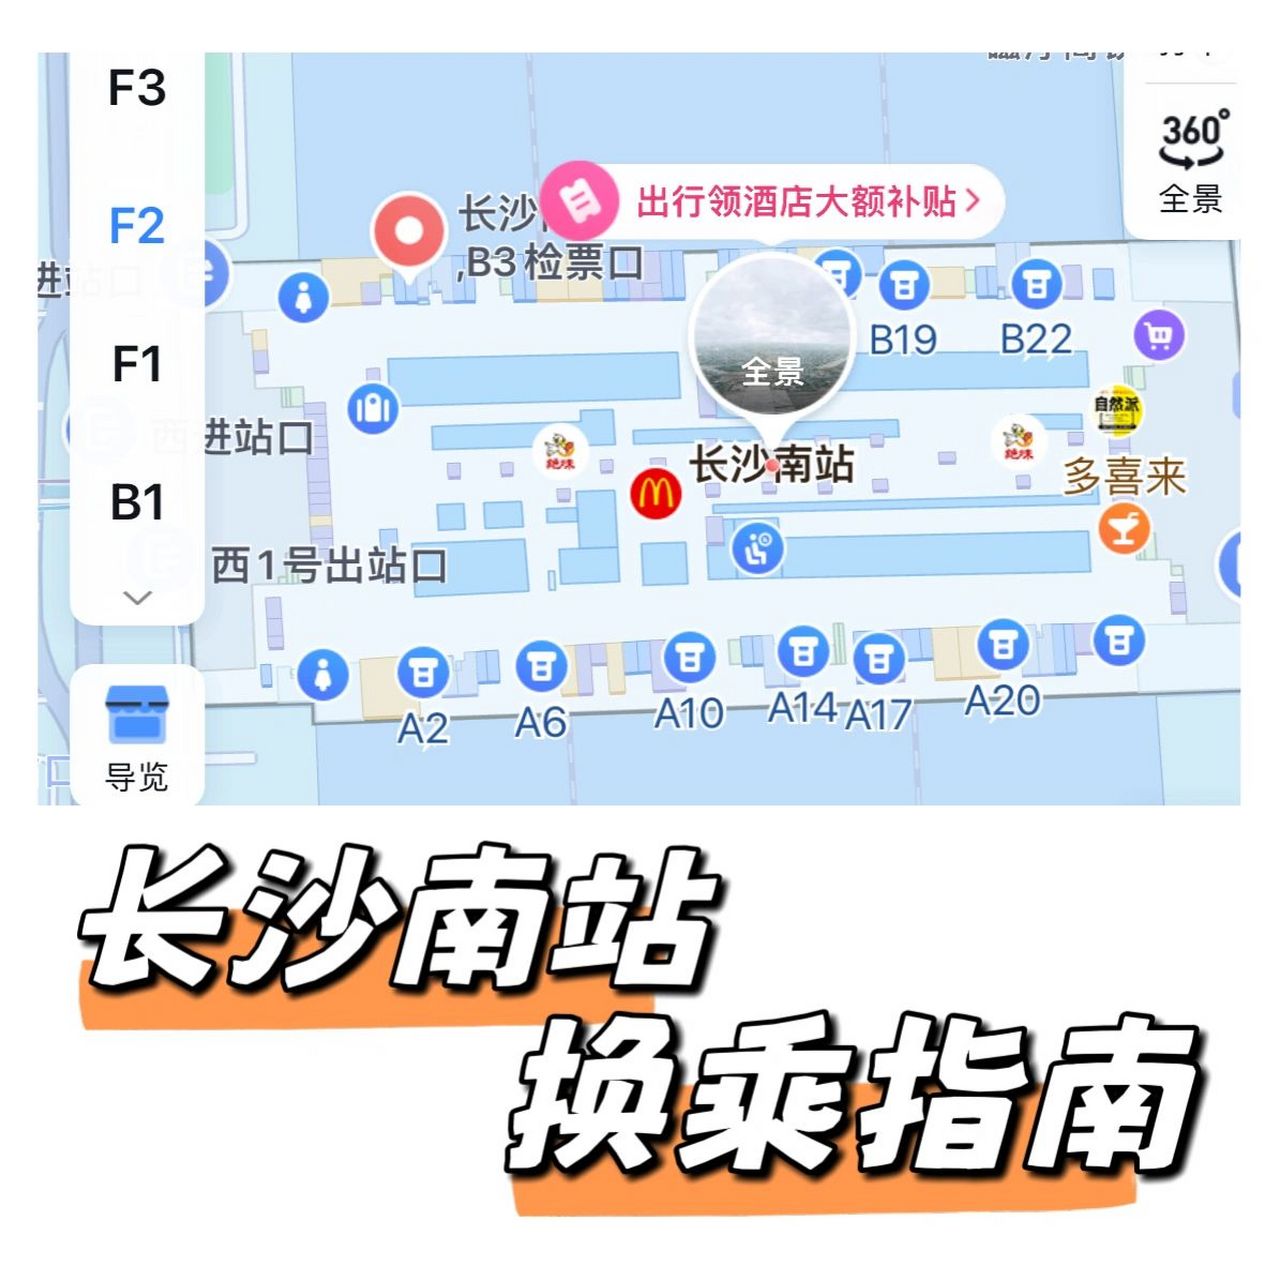 长沙南站 高铁5分钟换乘攻略!